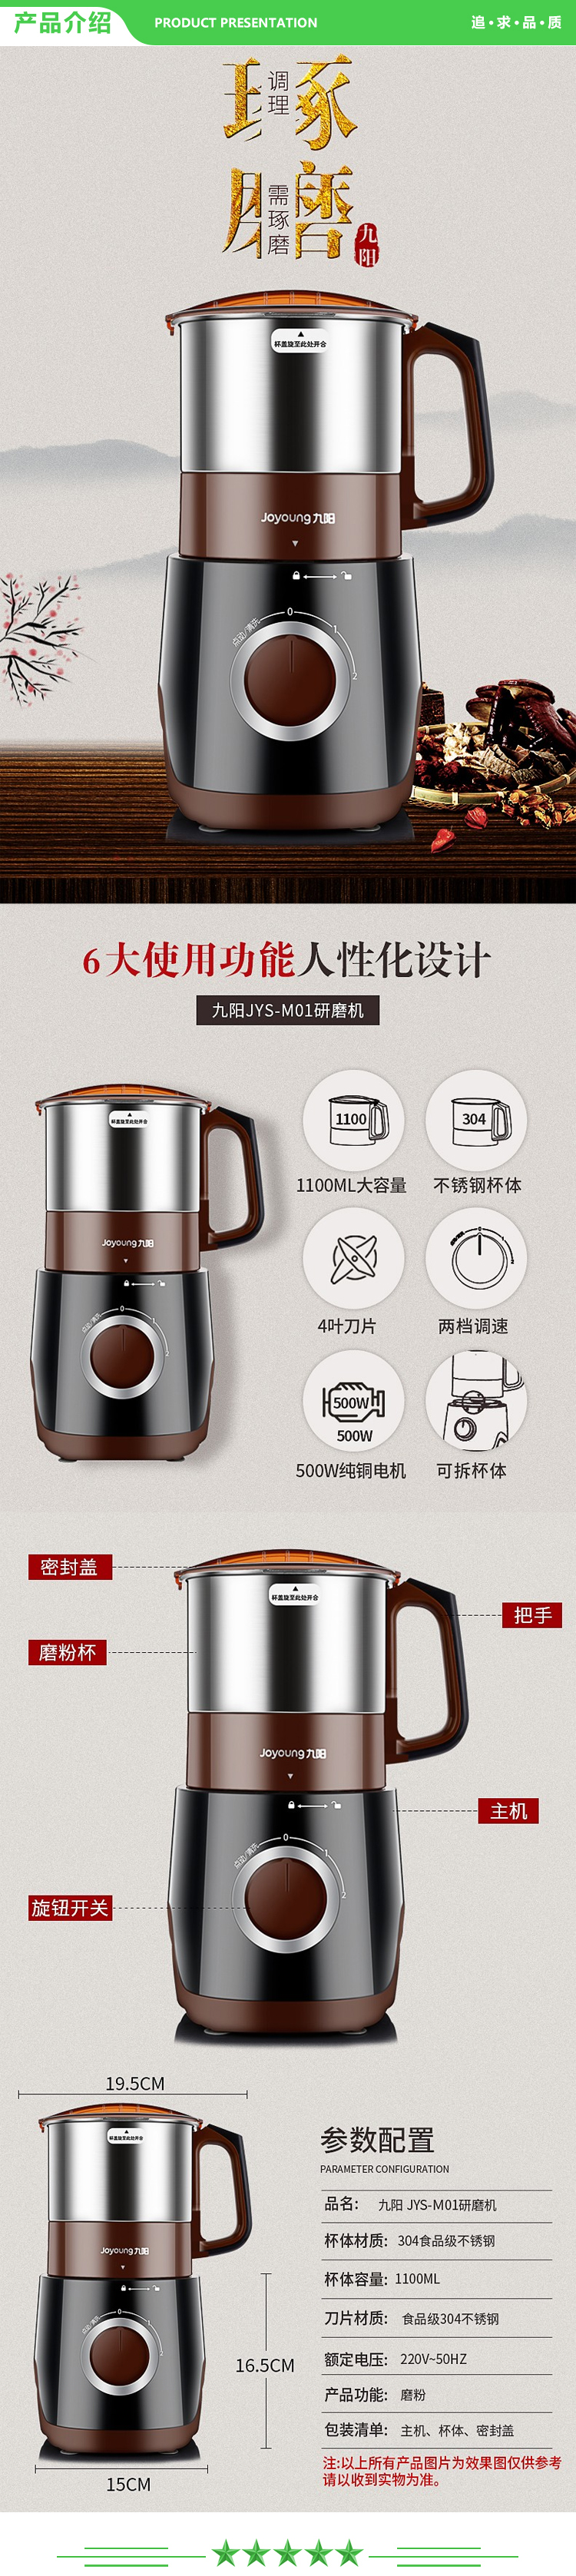 九阳 Joyoung JYS-M01 磨粉机 家用料理机五谷杂粮辅食机研磨机粉碎机.jpg